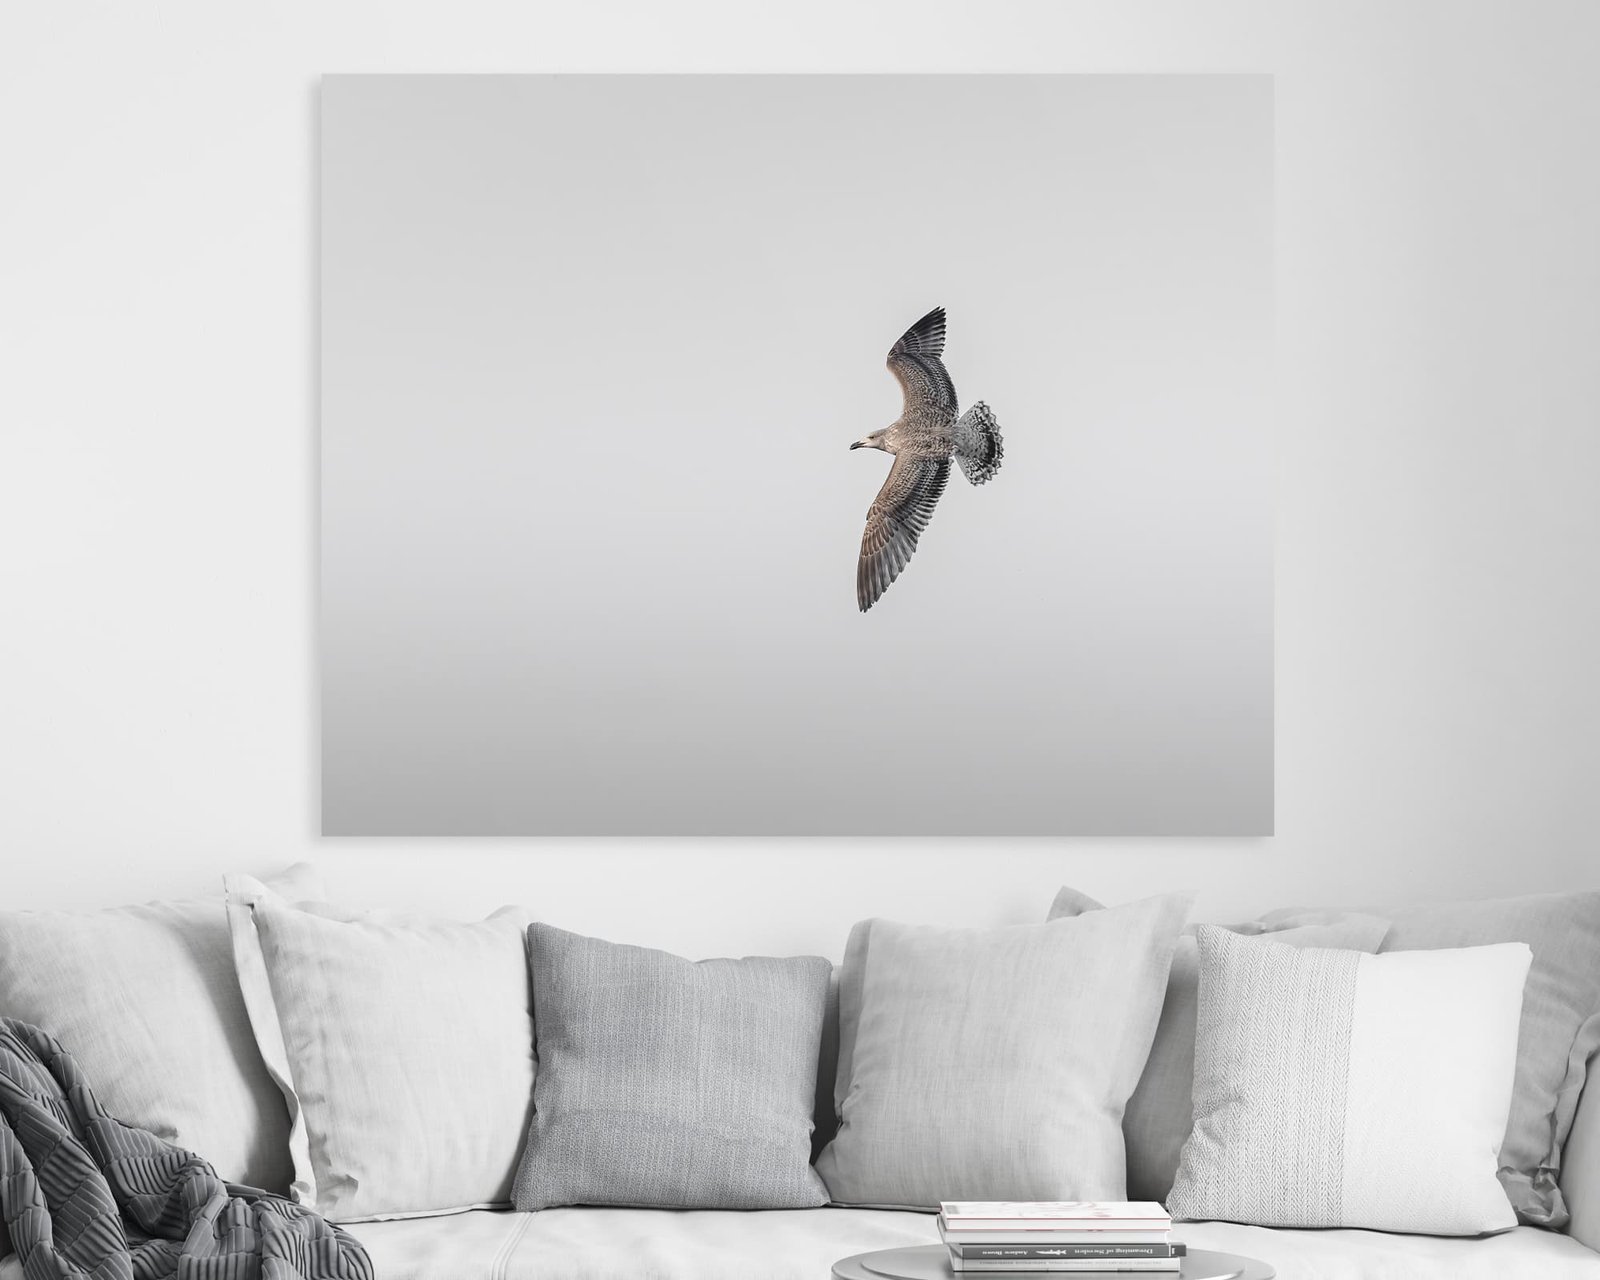 A minimalist wall art of a flying bird